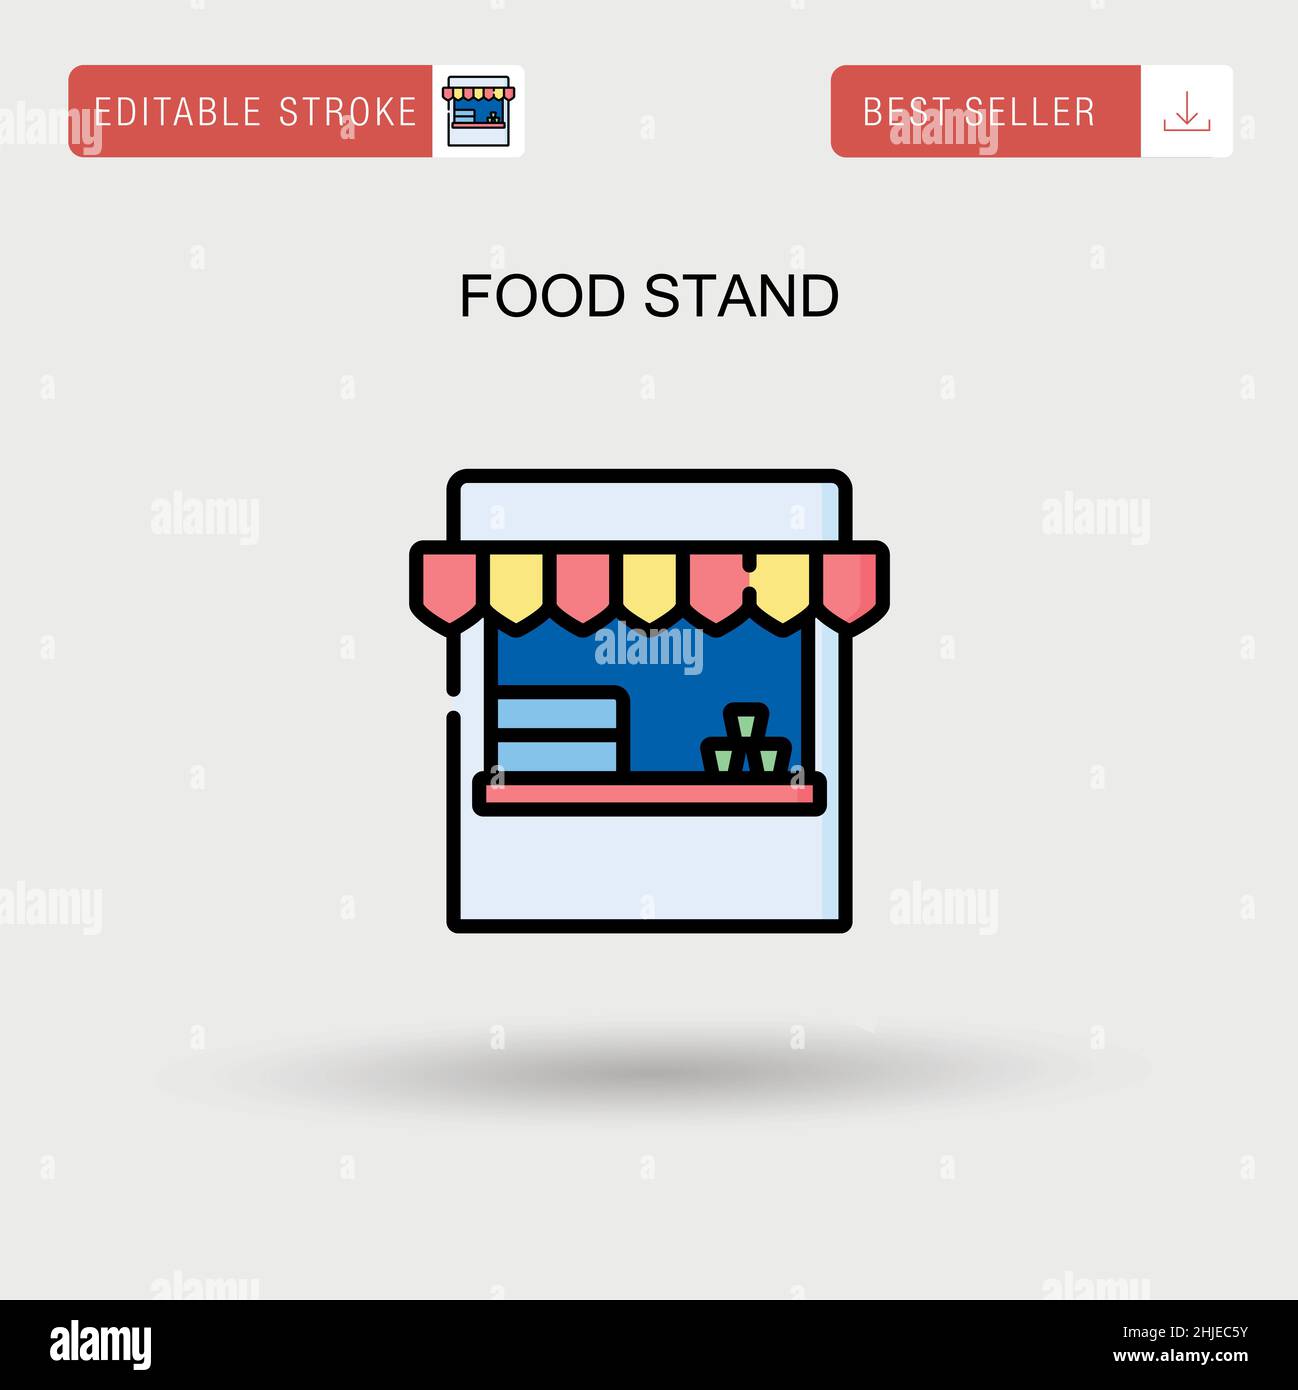 Einfaches Vektorsymbol für den Food Stand. Stock Vektor